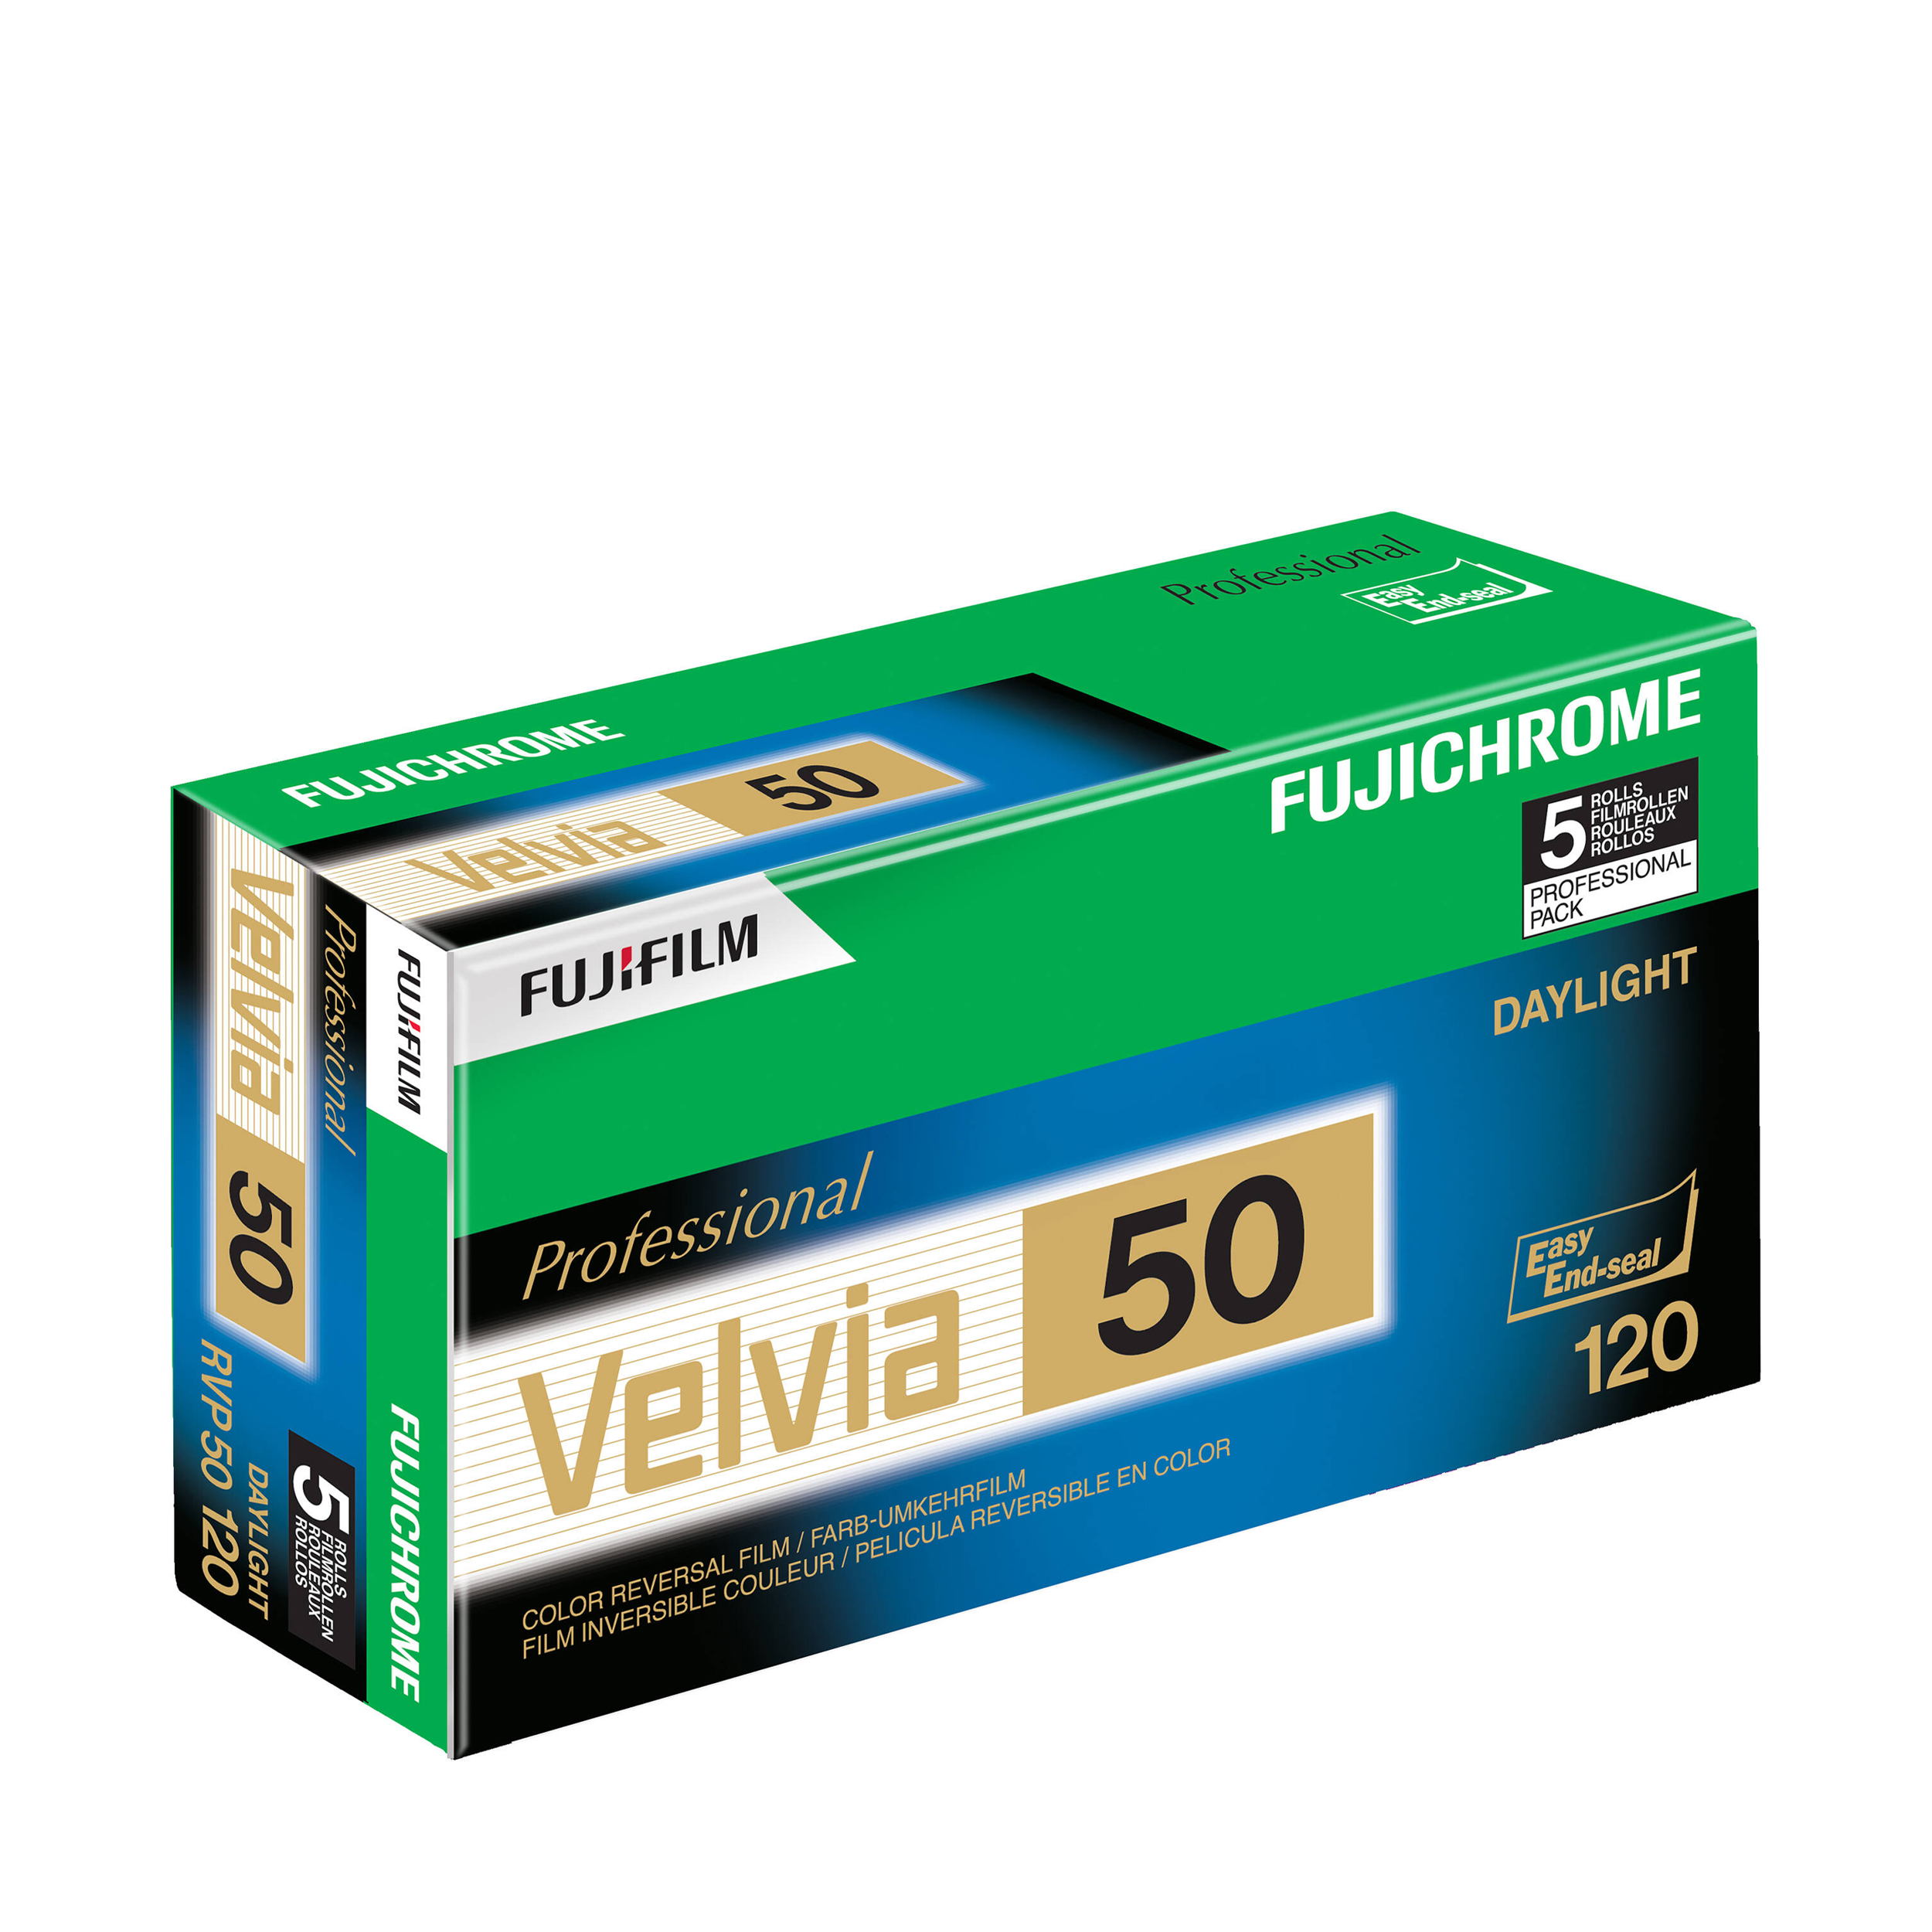 Fujifilm Fujichrome Velvia 50 Film de transparence de couleur professionnelle RVP 50 (film de 120 rouleaux, 5 pack)